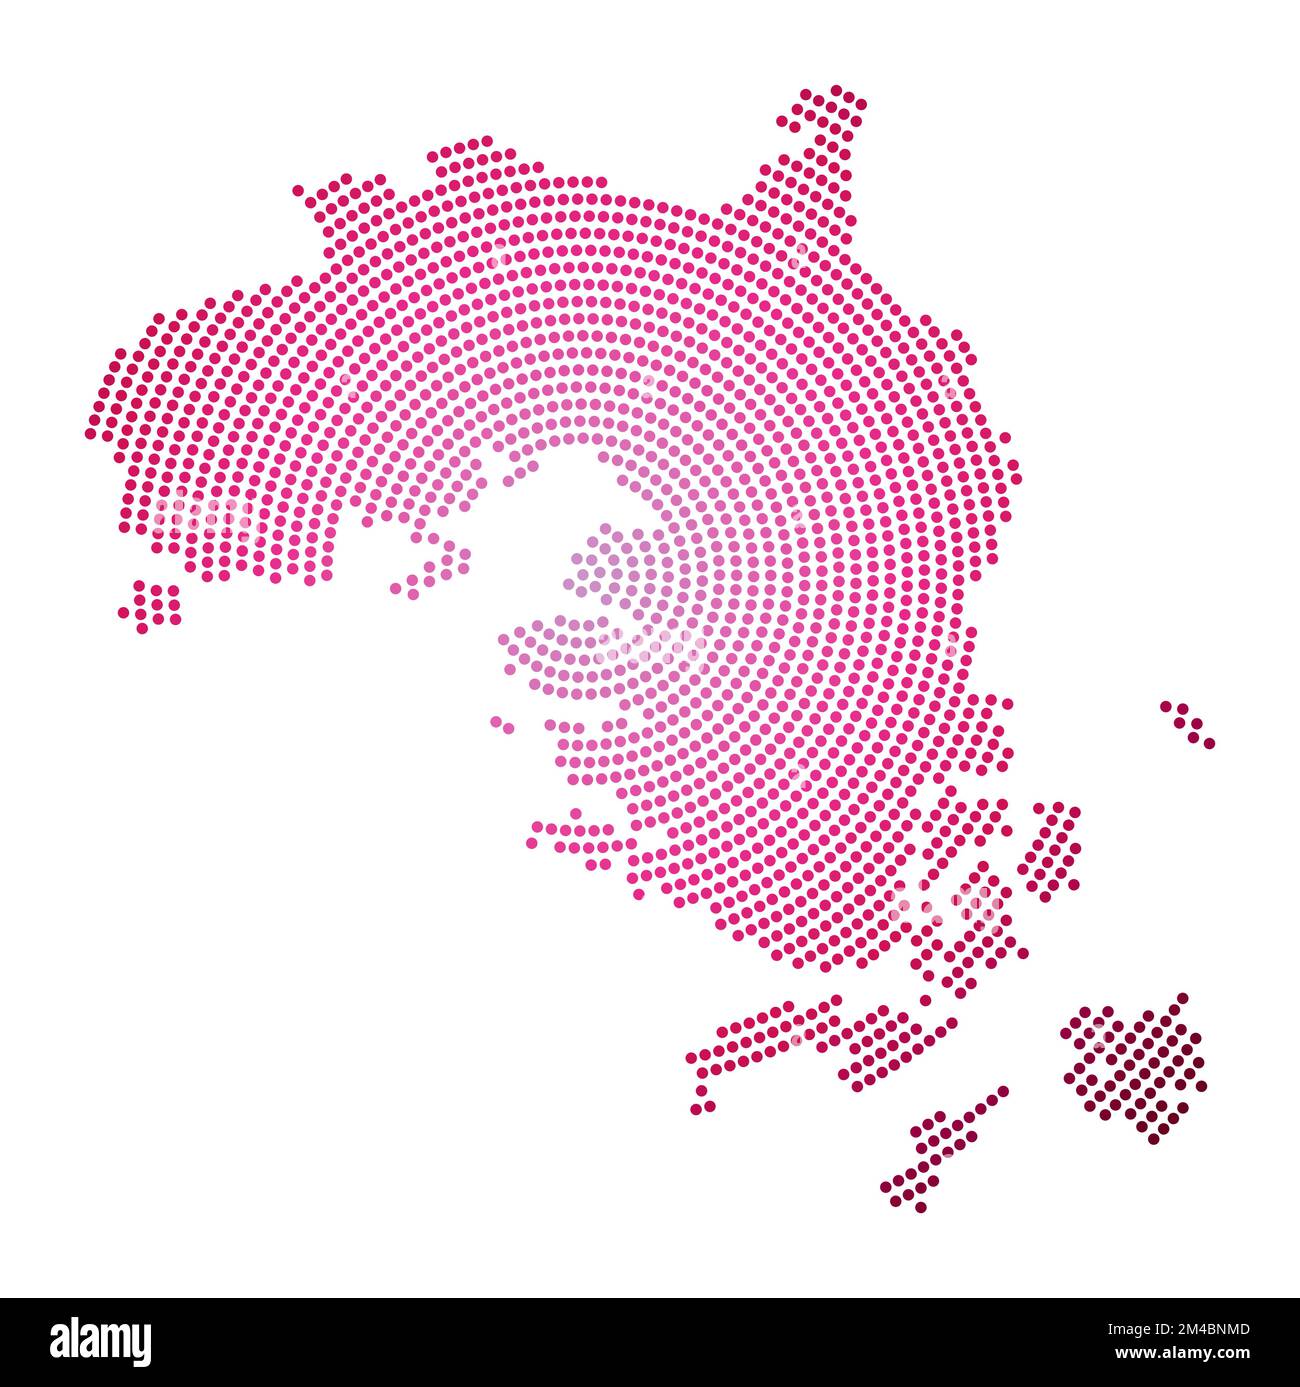 Gepunktete Karte der Insel Bintan. Digitale Form der Insel Bintan. Technisches Symbol der Insel mit abgestuften Punkten. Stilvolle Vektordarstellung. Stock Vektor